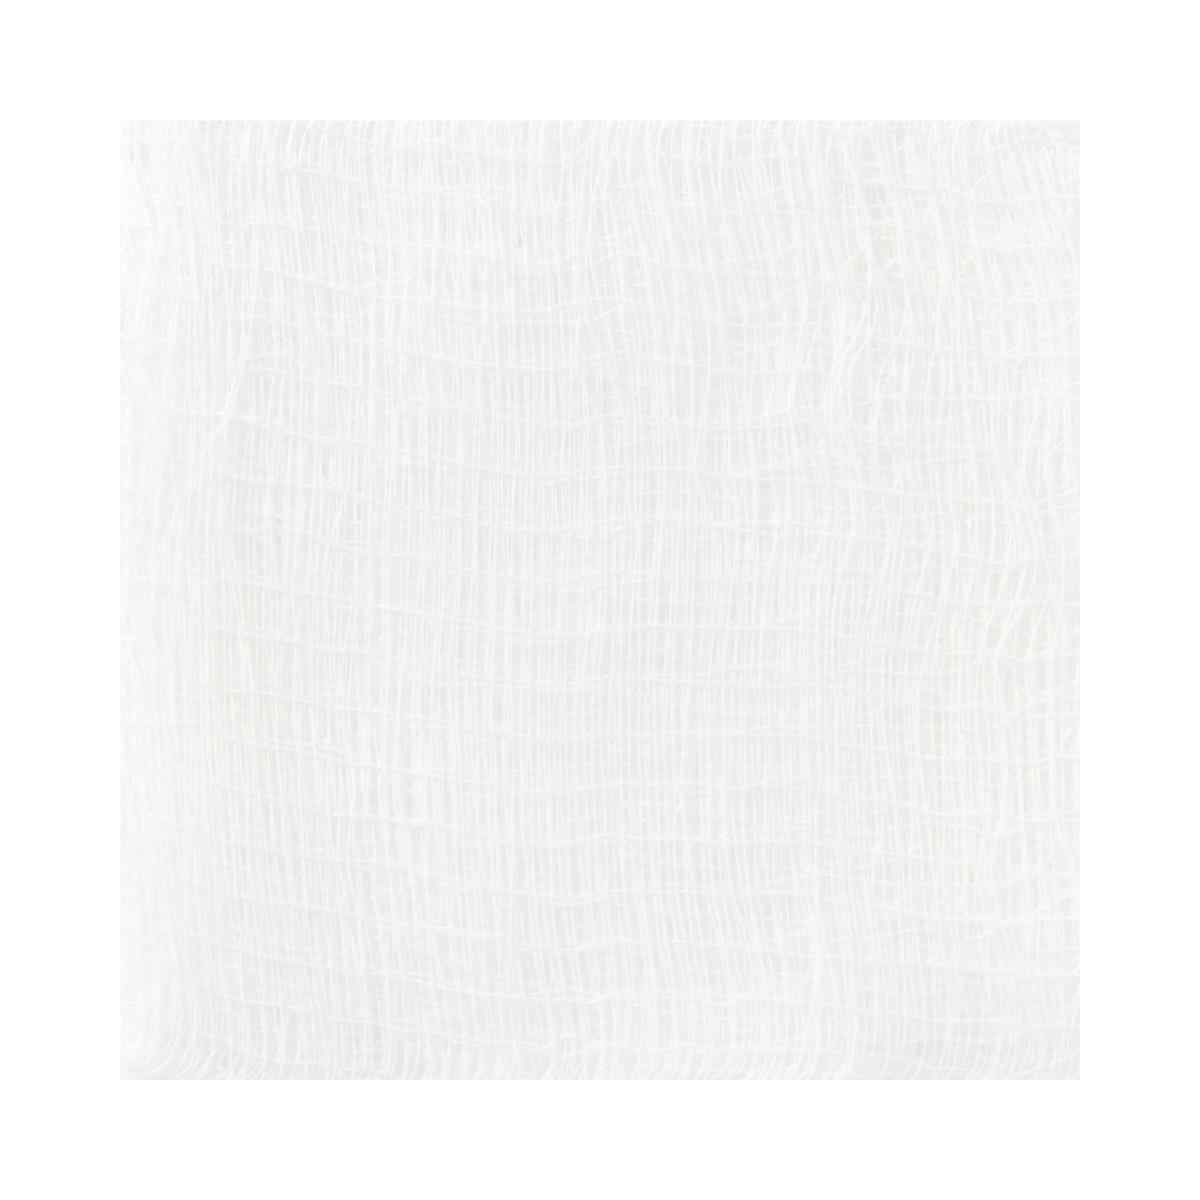 Medline Woven Cotton 16-Ply Gauze Sponge, Non-Sterile, PRM21416CZ, 4" X 4" - Bag of 200